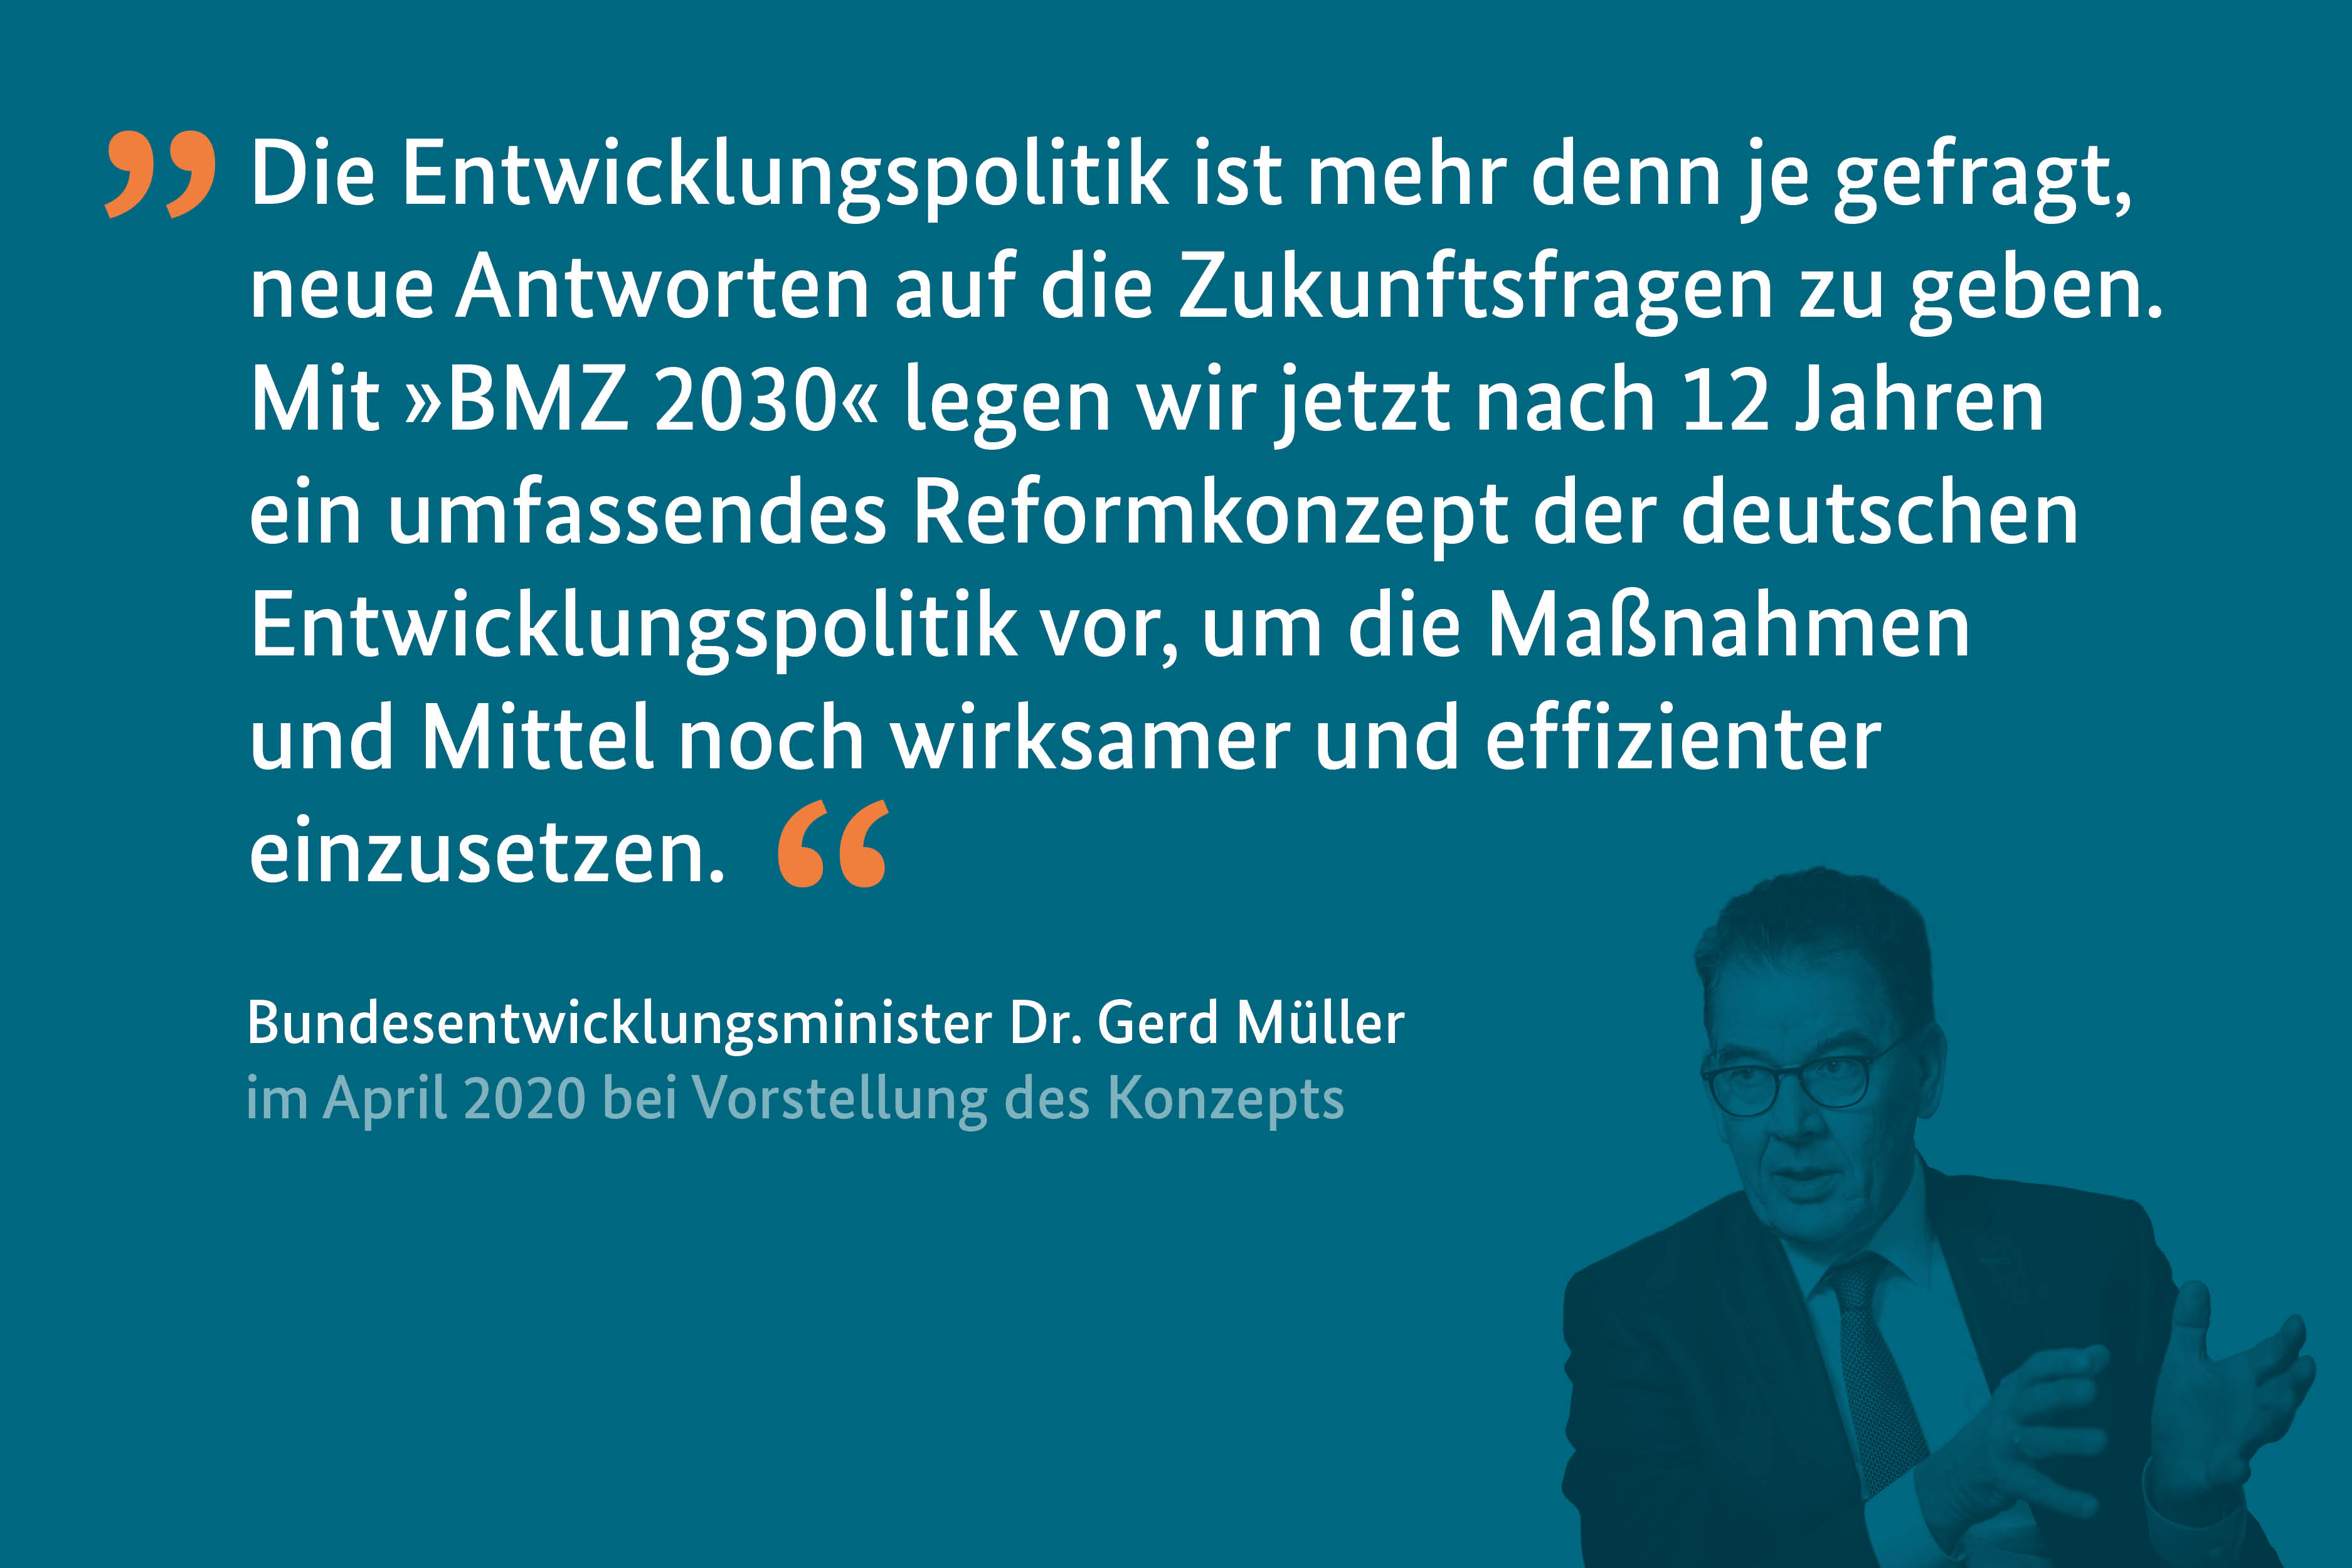 Zitat Dr. Gerd Müller zum Reformkonzept BMZ 2030